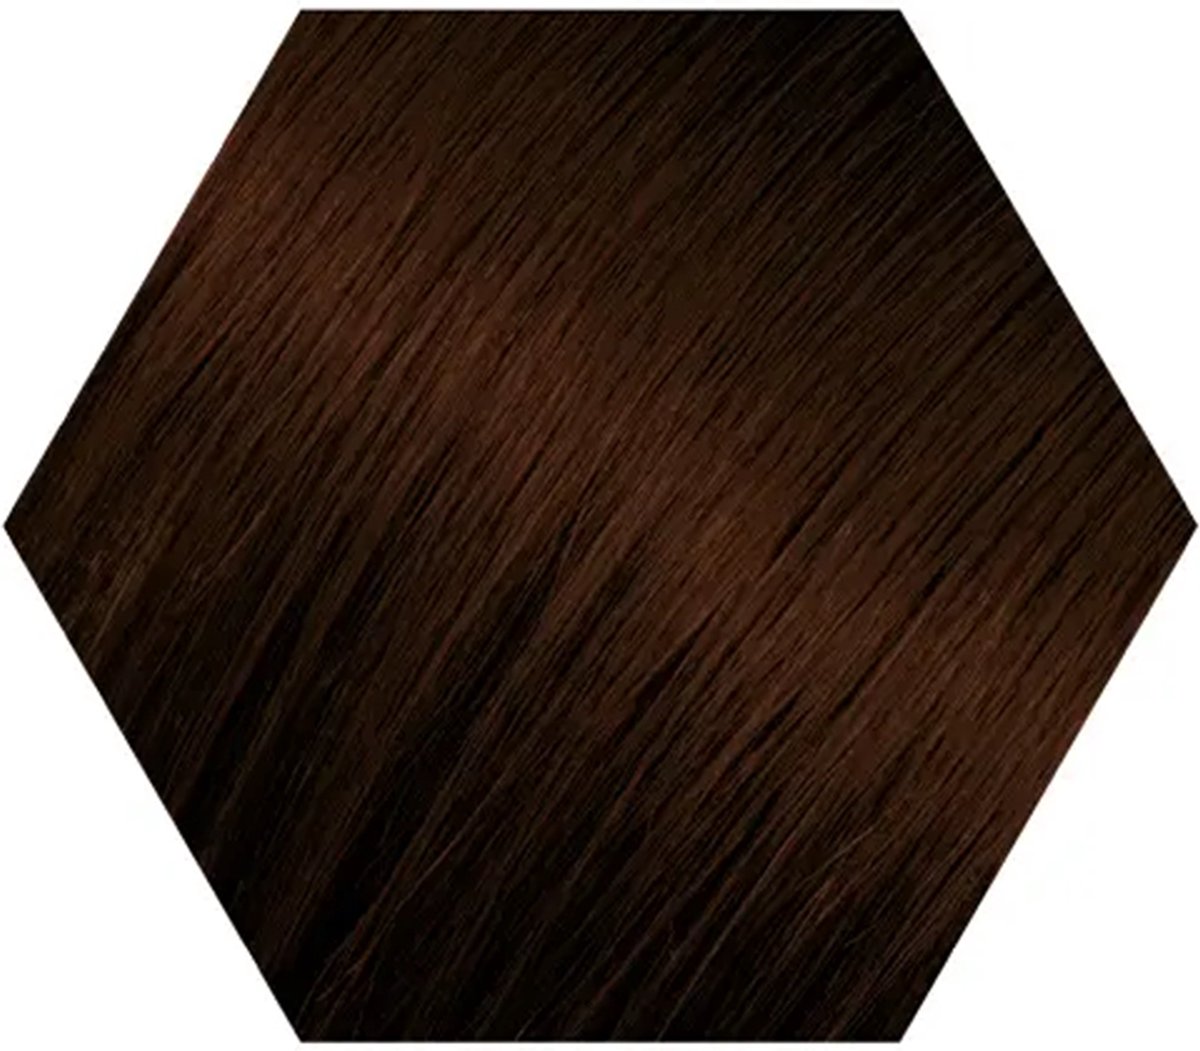 Wecolour Haarverf - Kastanje donkerbruin 4.8 - Kapperskwaliteit Haarkleuring